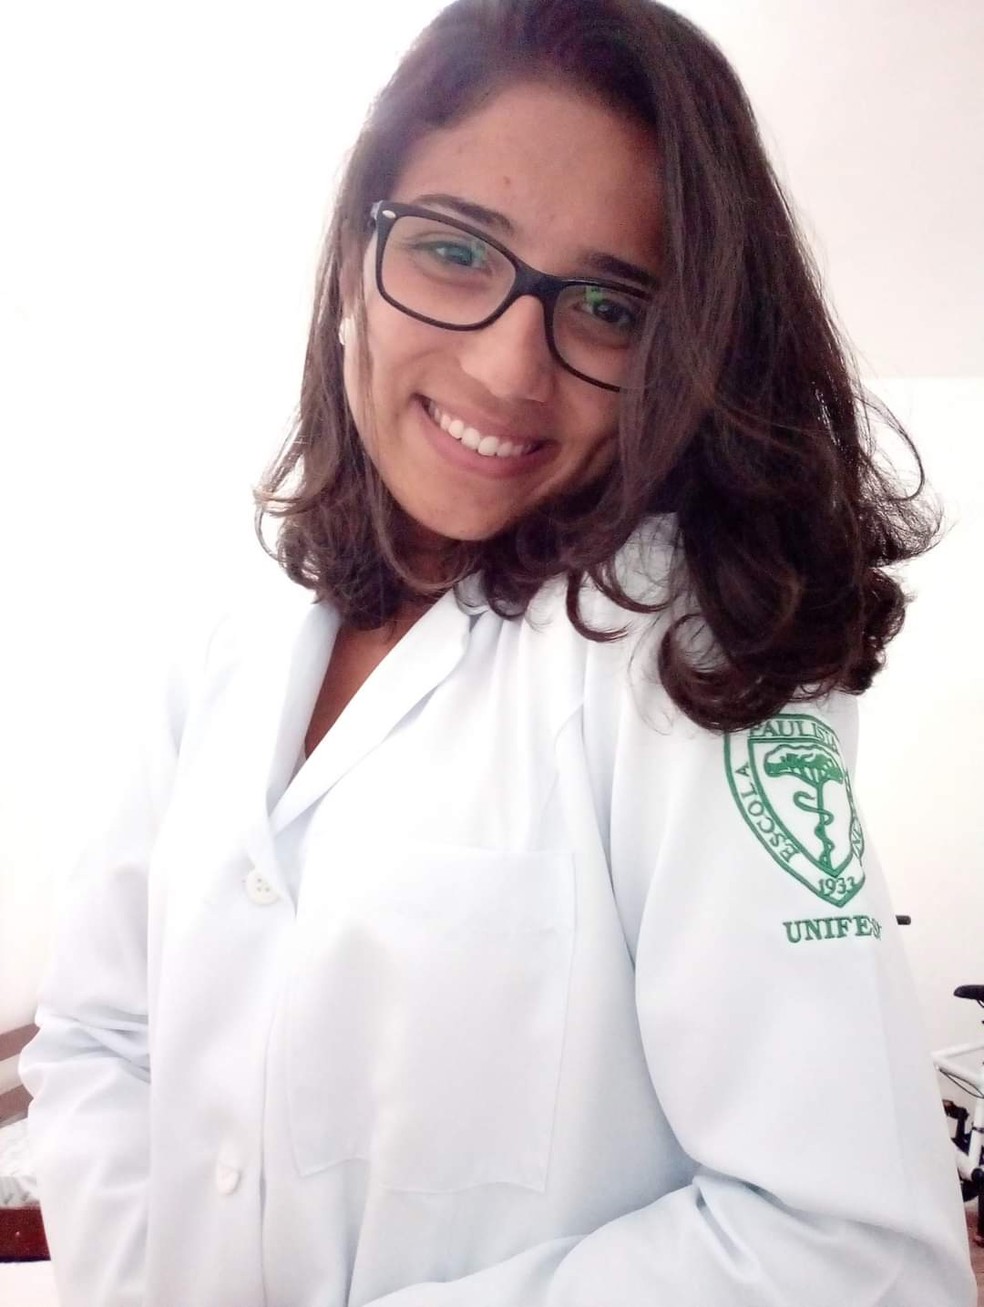 Rafaela Dantas, aprovada em medicina na Unifesp, criou um grupo de apoio para estudantes com deficiência na universidade — Foto: Arquivo pessoal/Rafaela Dantas